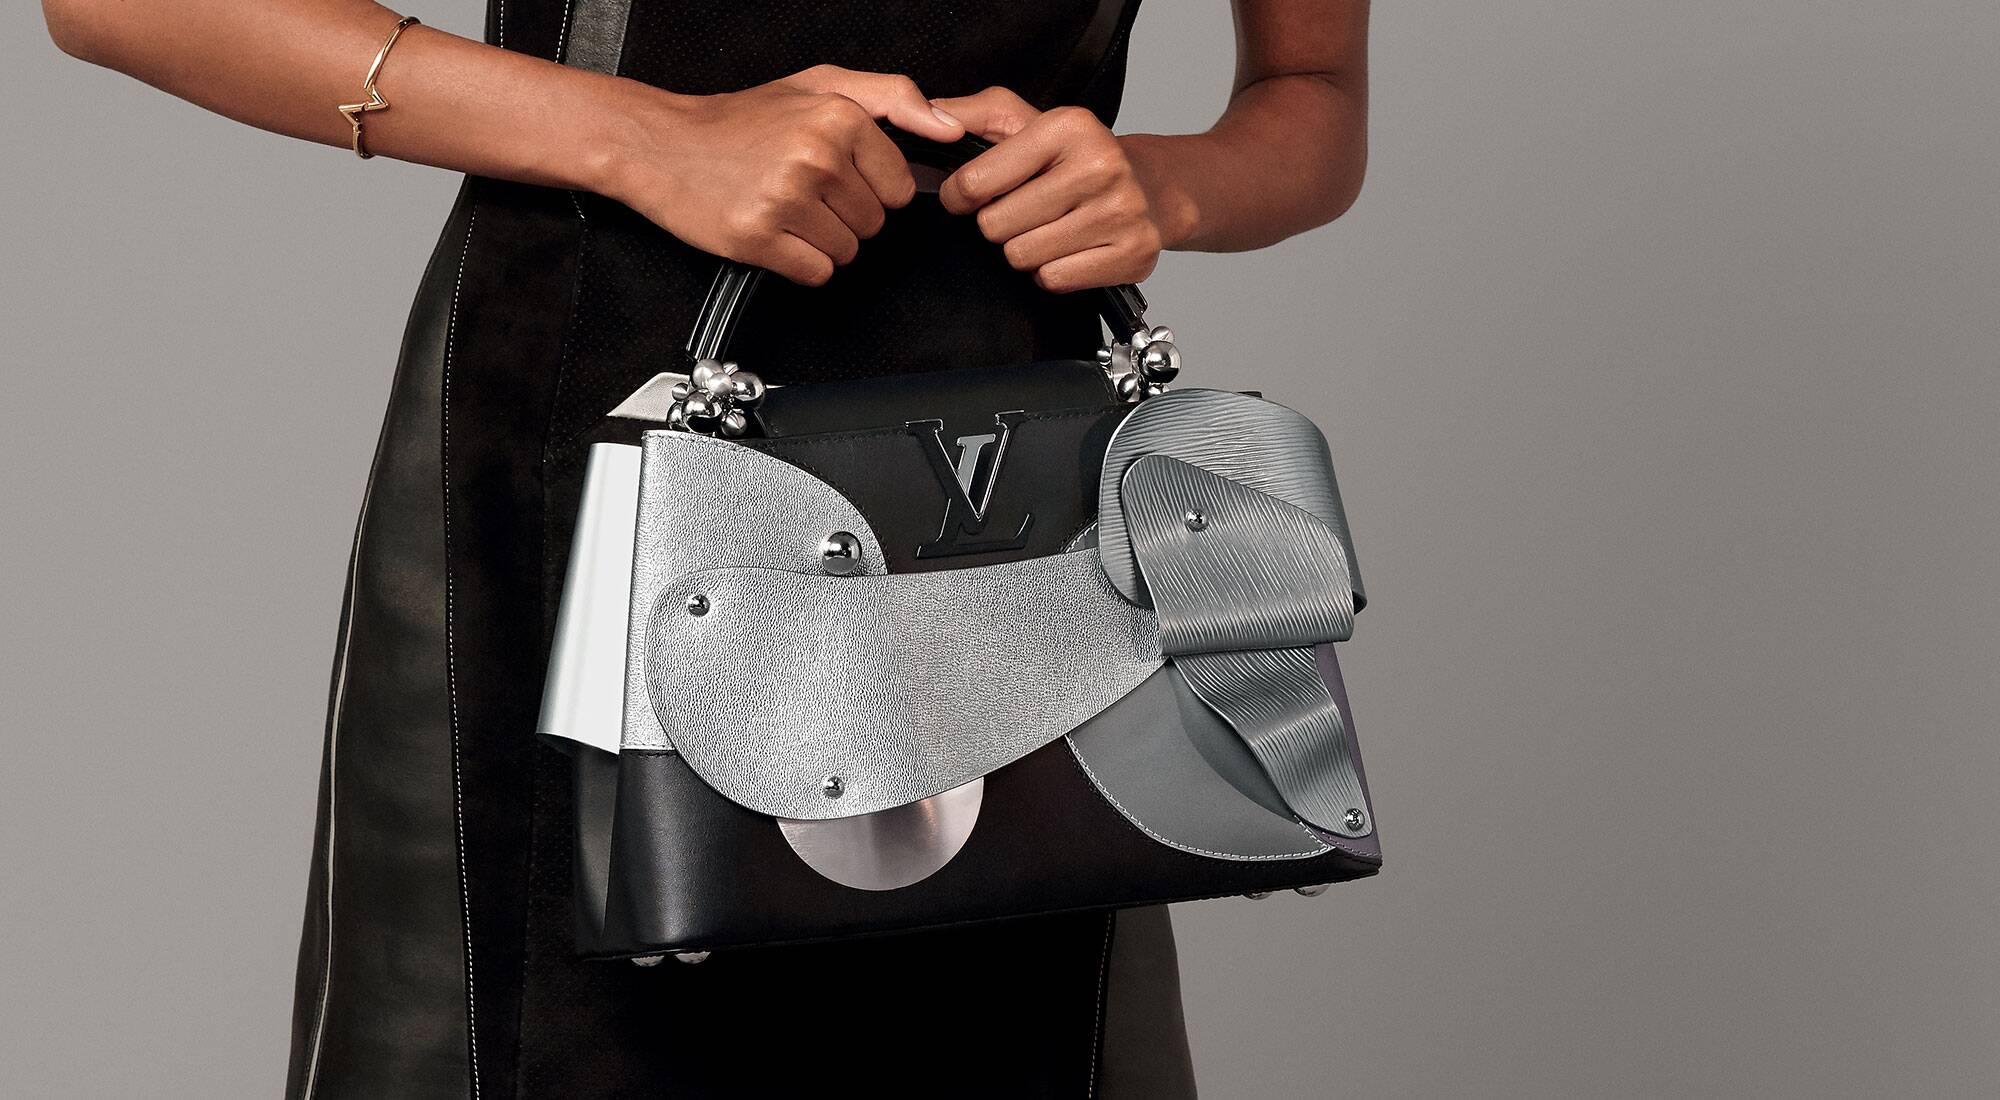 Louis Vuitton Capucines Bag Limited Edition Since 1854 Monogram